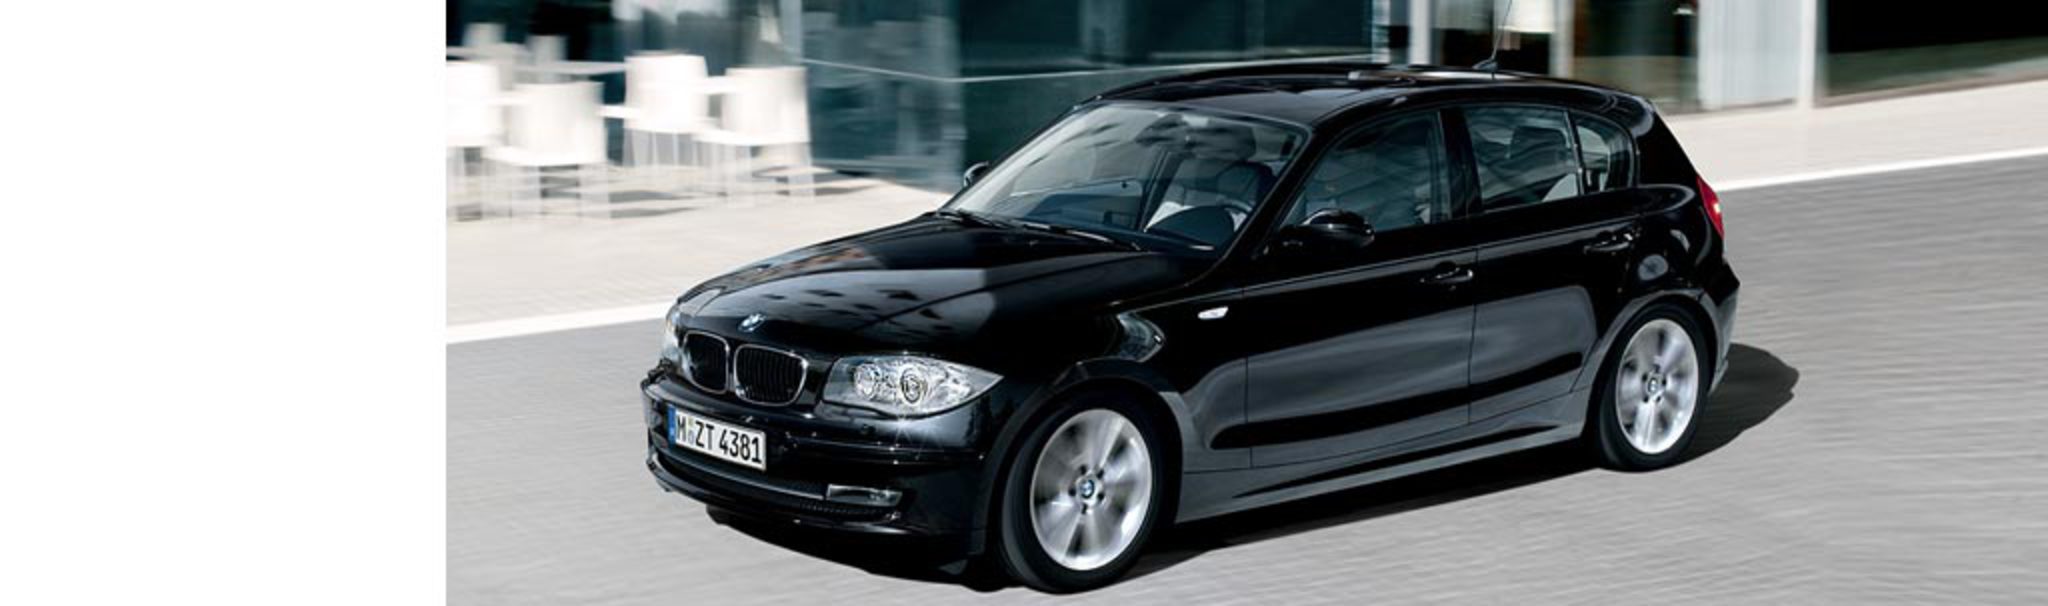 BMW 120d (5-door). 128 g/km CO2. Lightweight construction, energy management